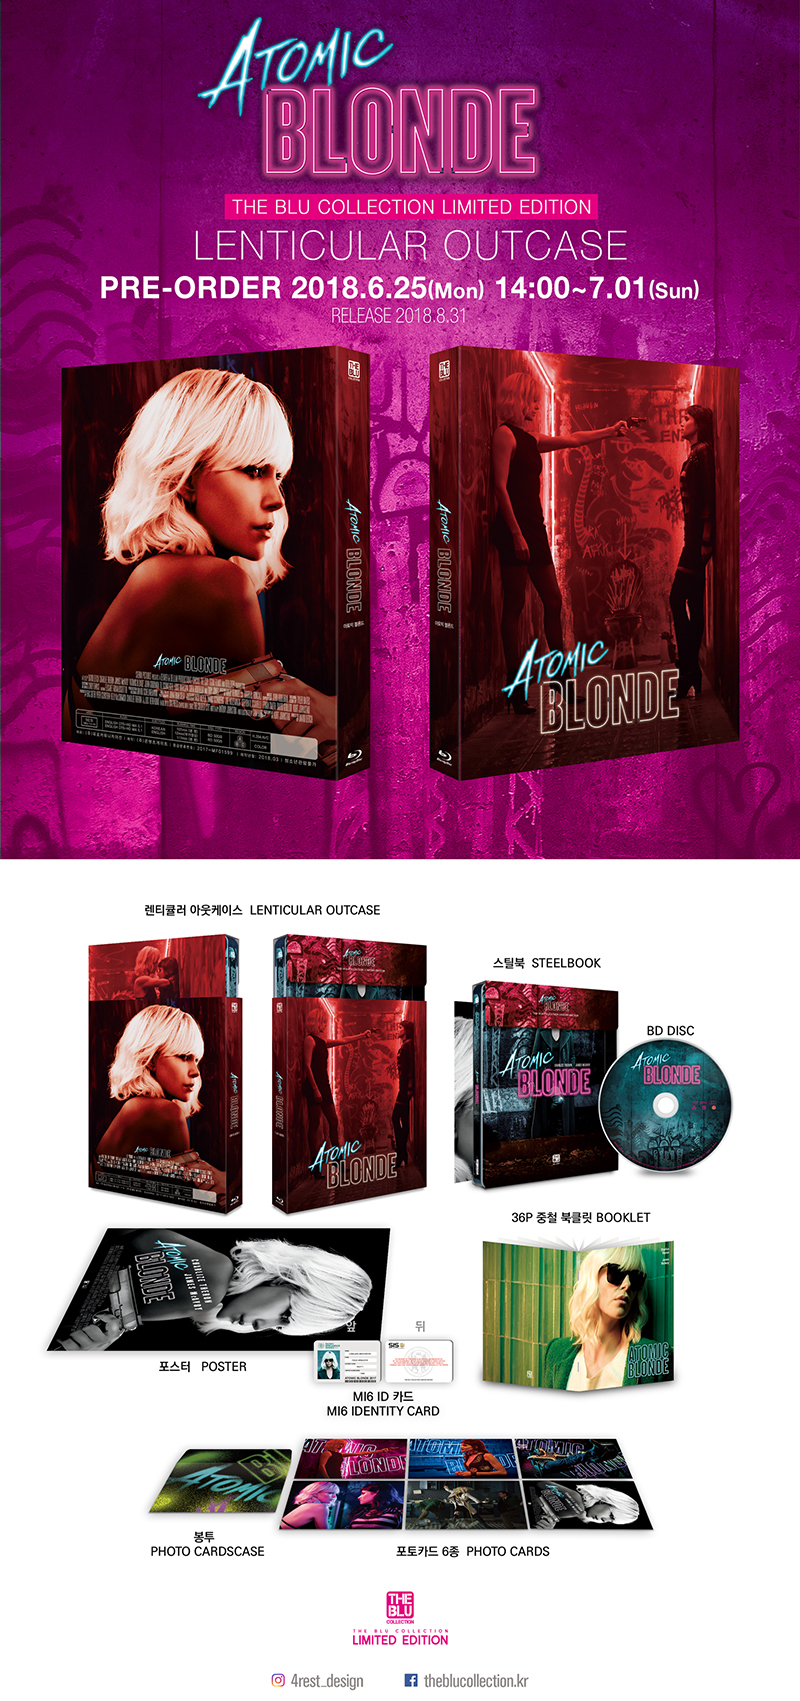 アトミック・ブロンド スチールブック 4K Ultra HD The Atomic Blonde KimchiDVD steelbook